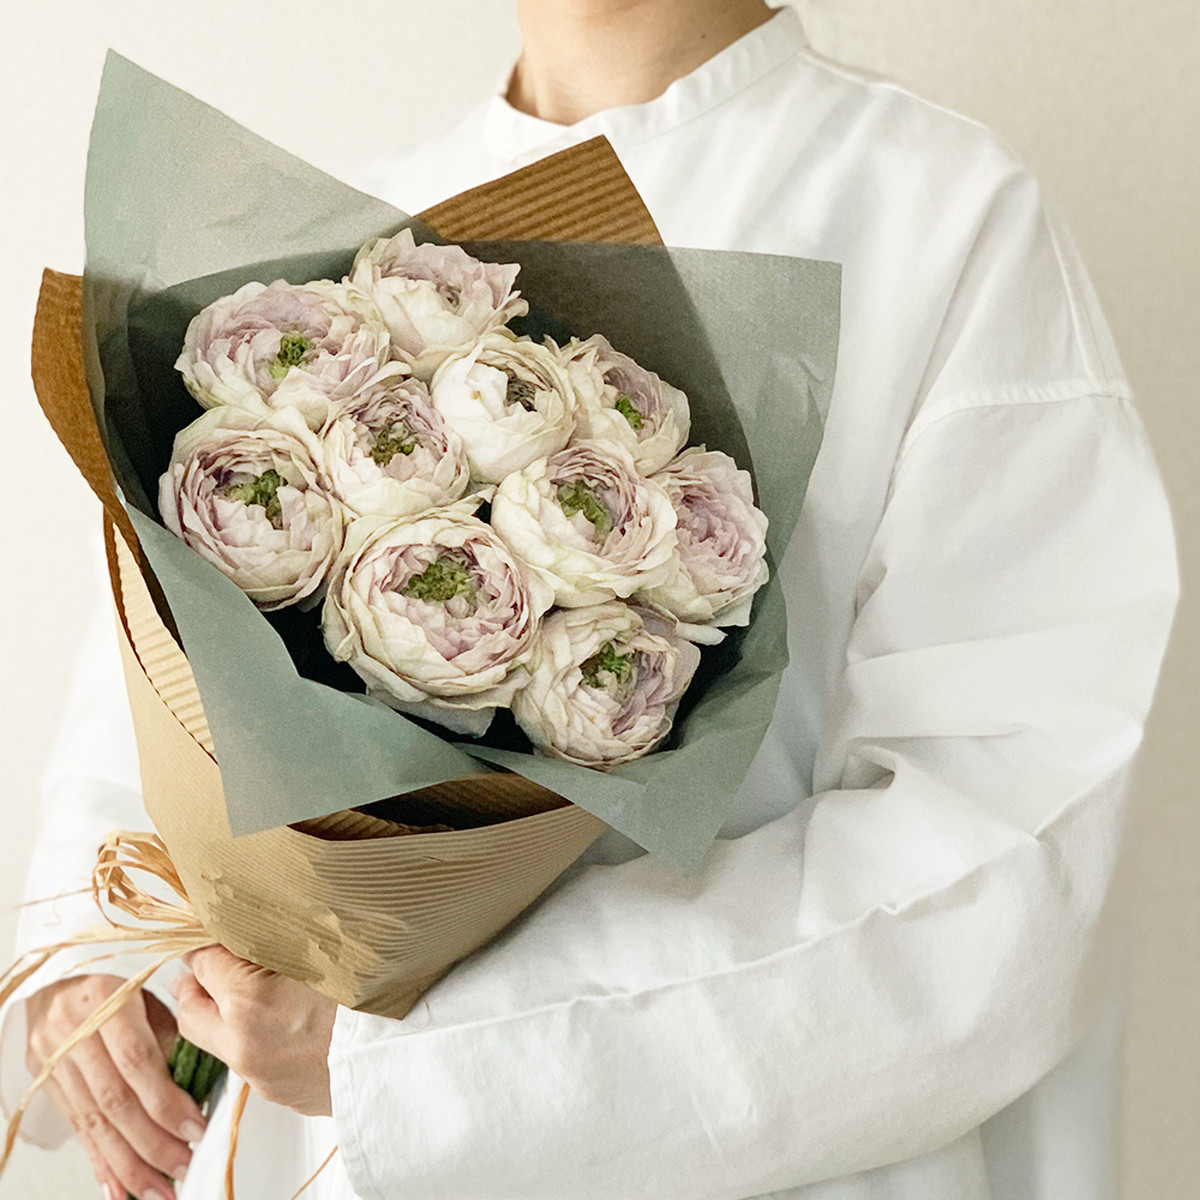 やぎバラ育種農園 シュエルヴァーズ プレゼントブーケ Ja遠州夢咲 よいはな Yoihana 最高品質の良い花の通販サイト